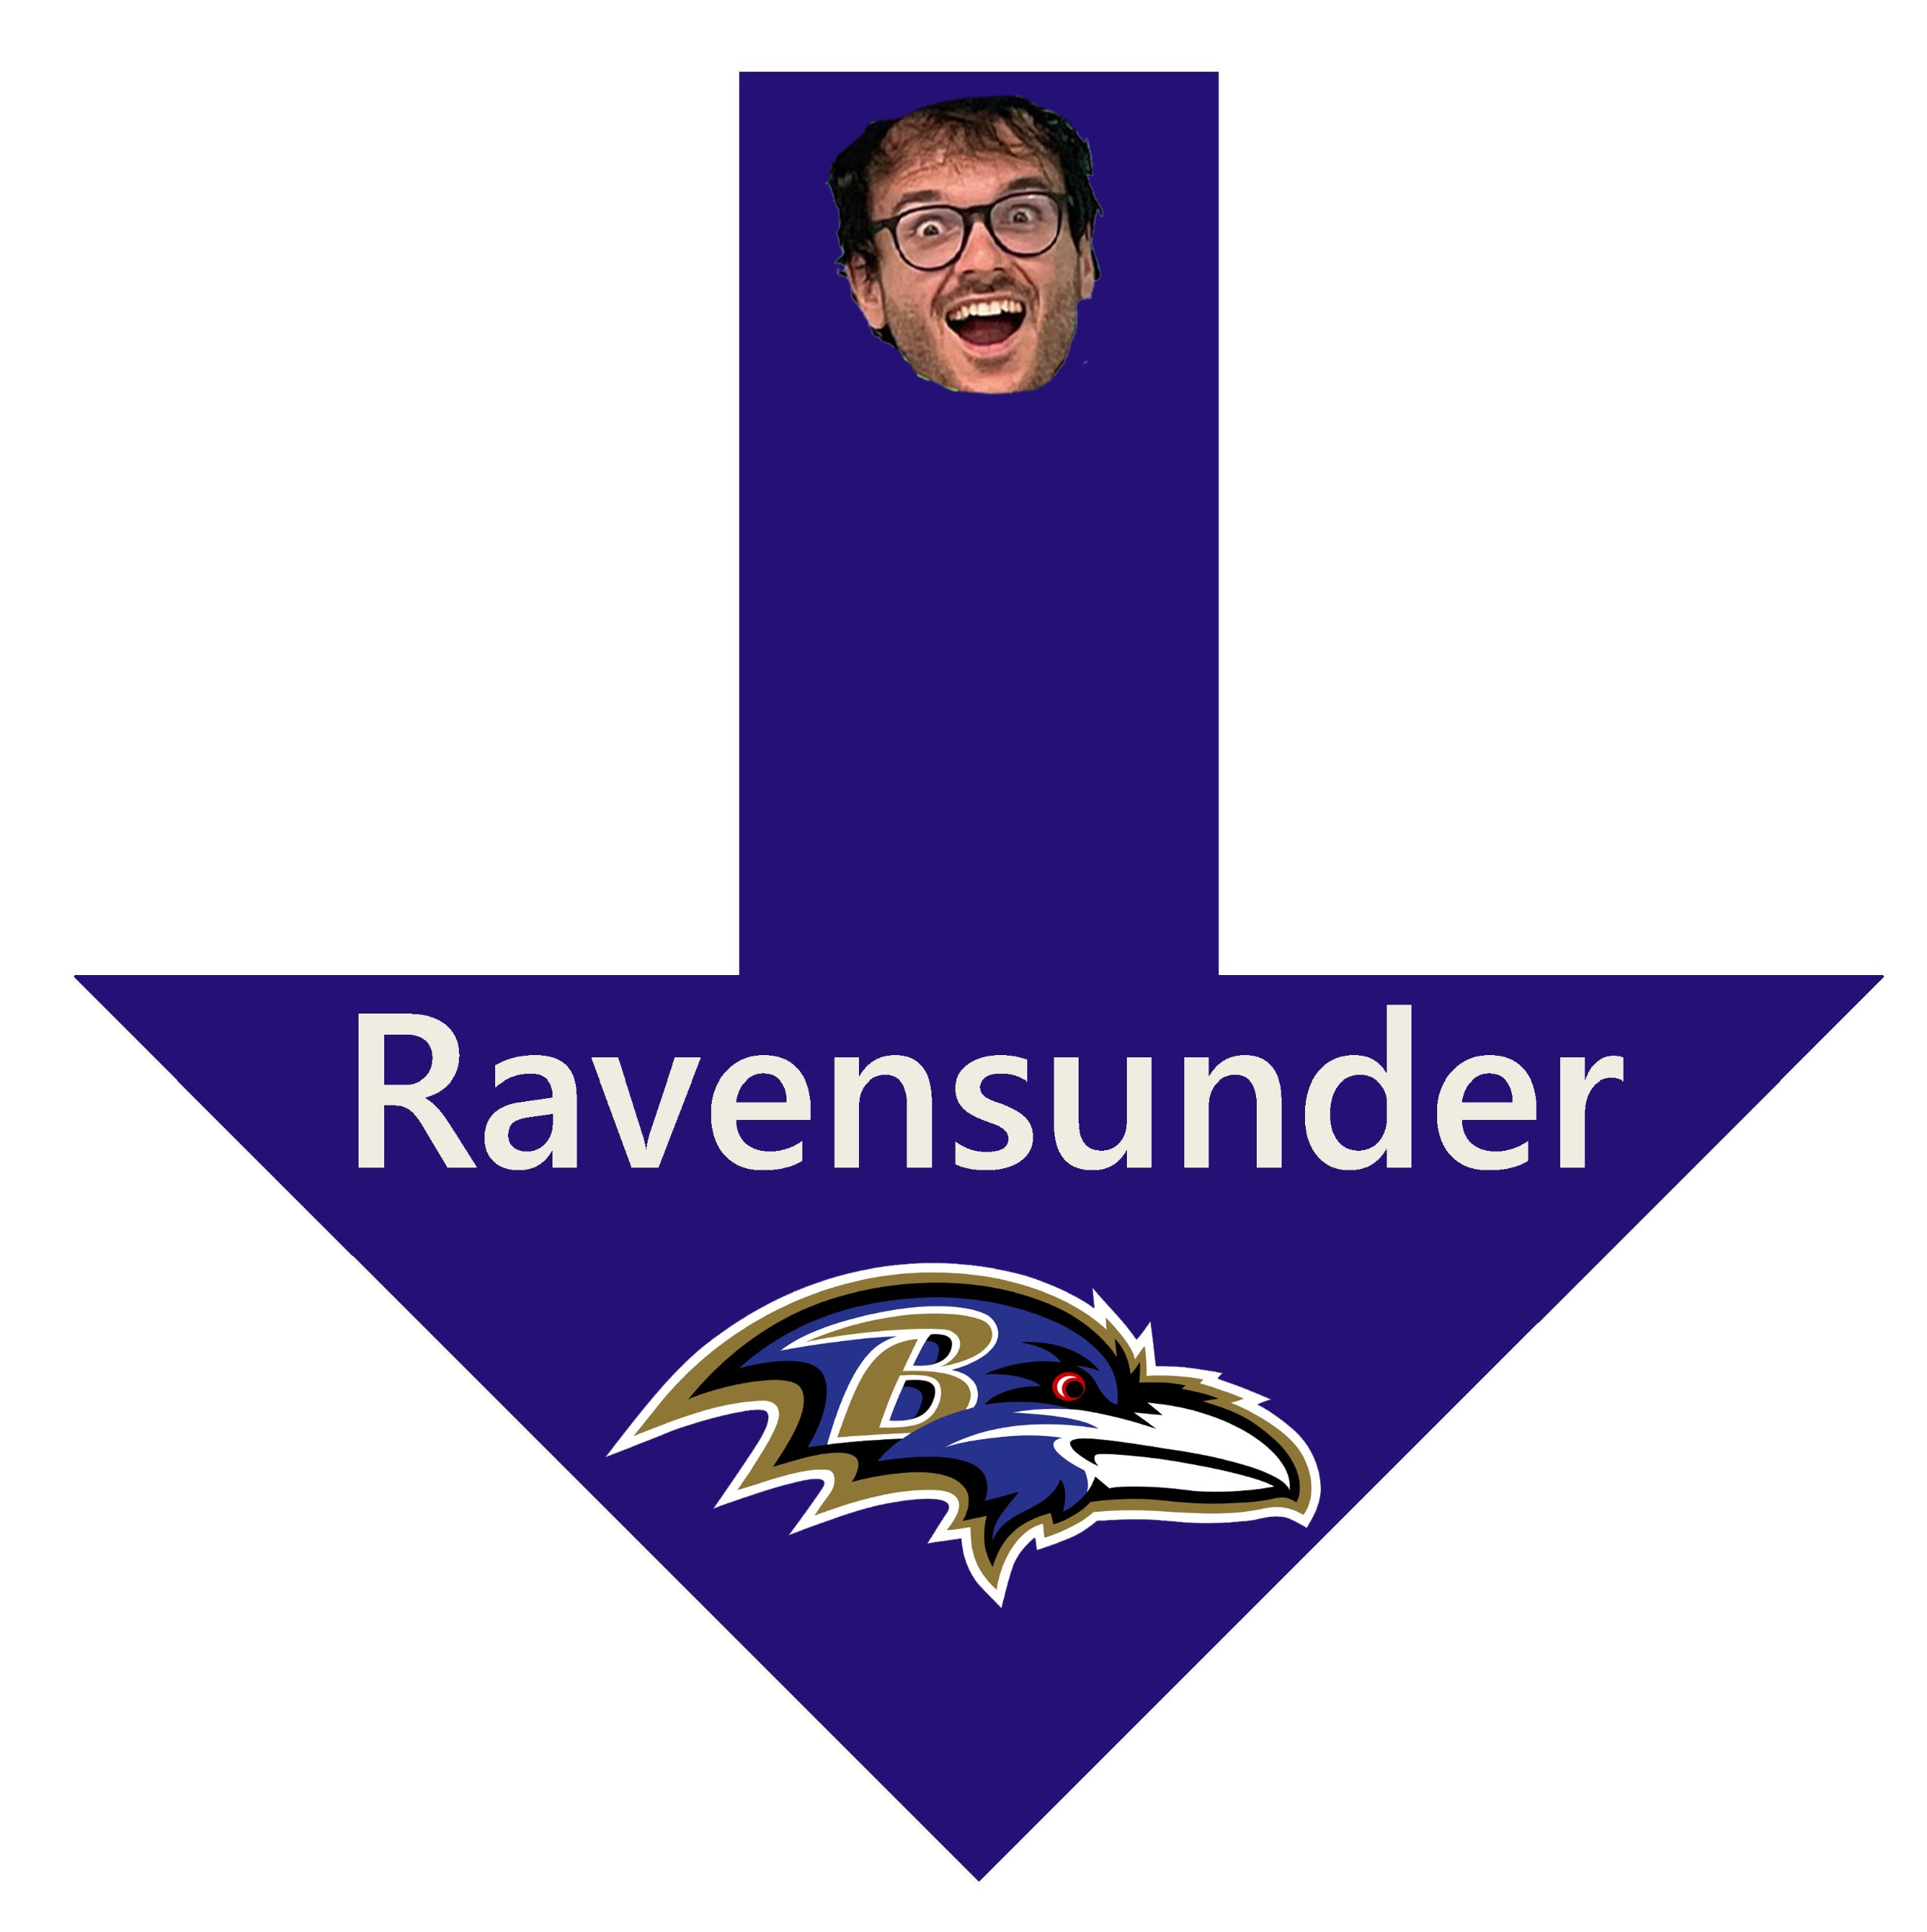 Ravensunder